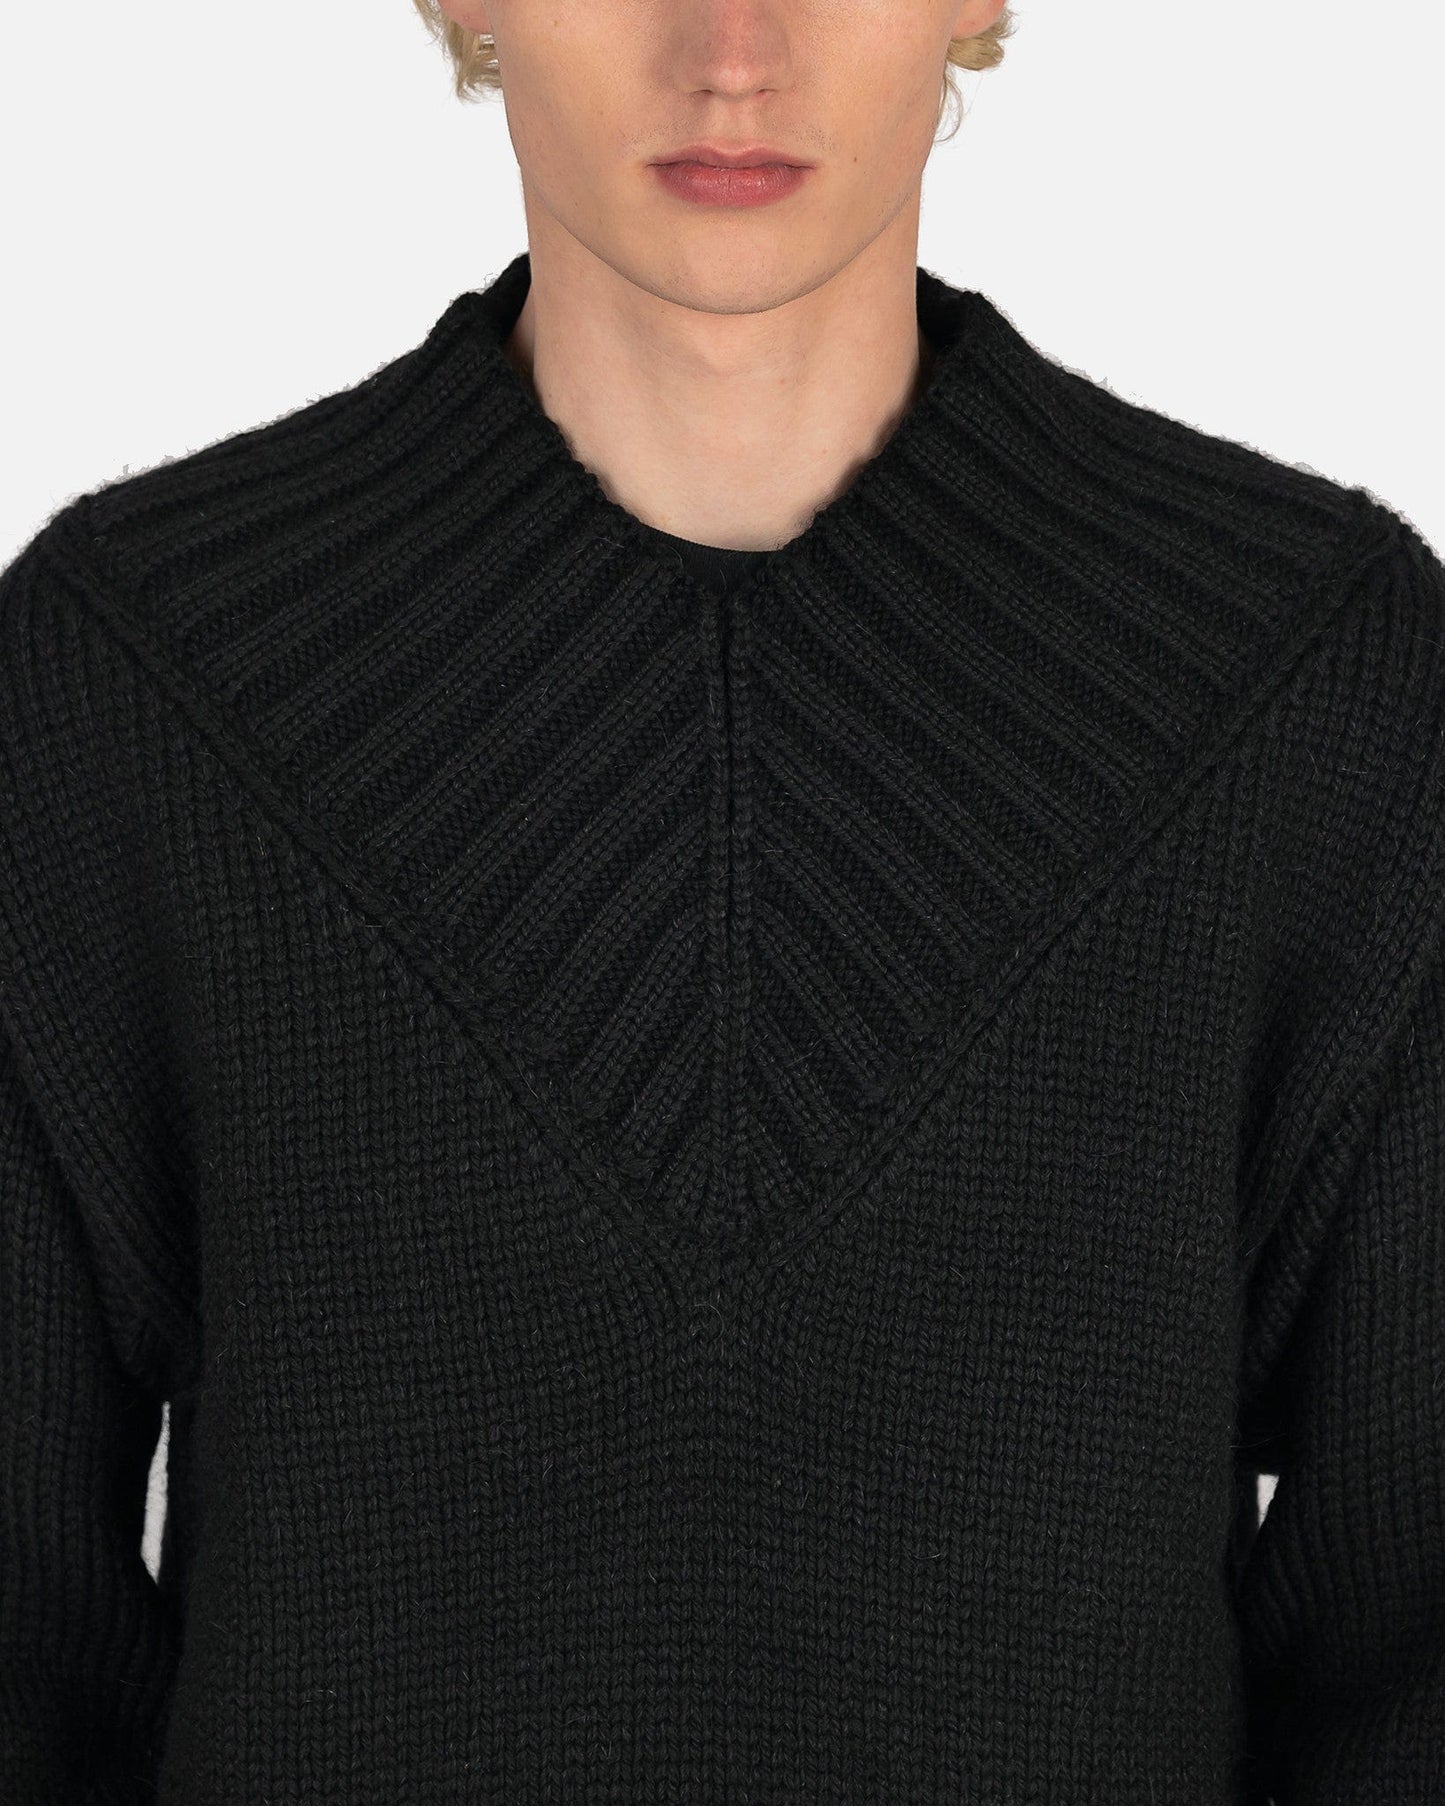 Jil Sander Men's Sweater Wool Mohair Sweater in Black